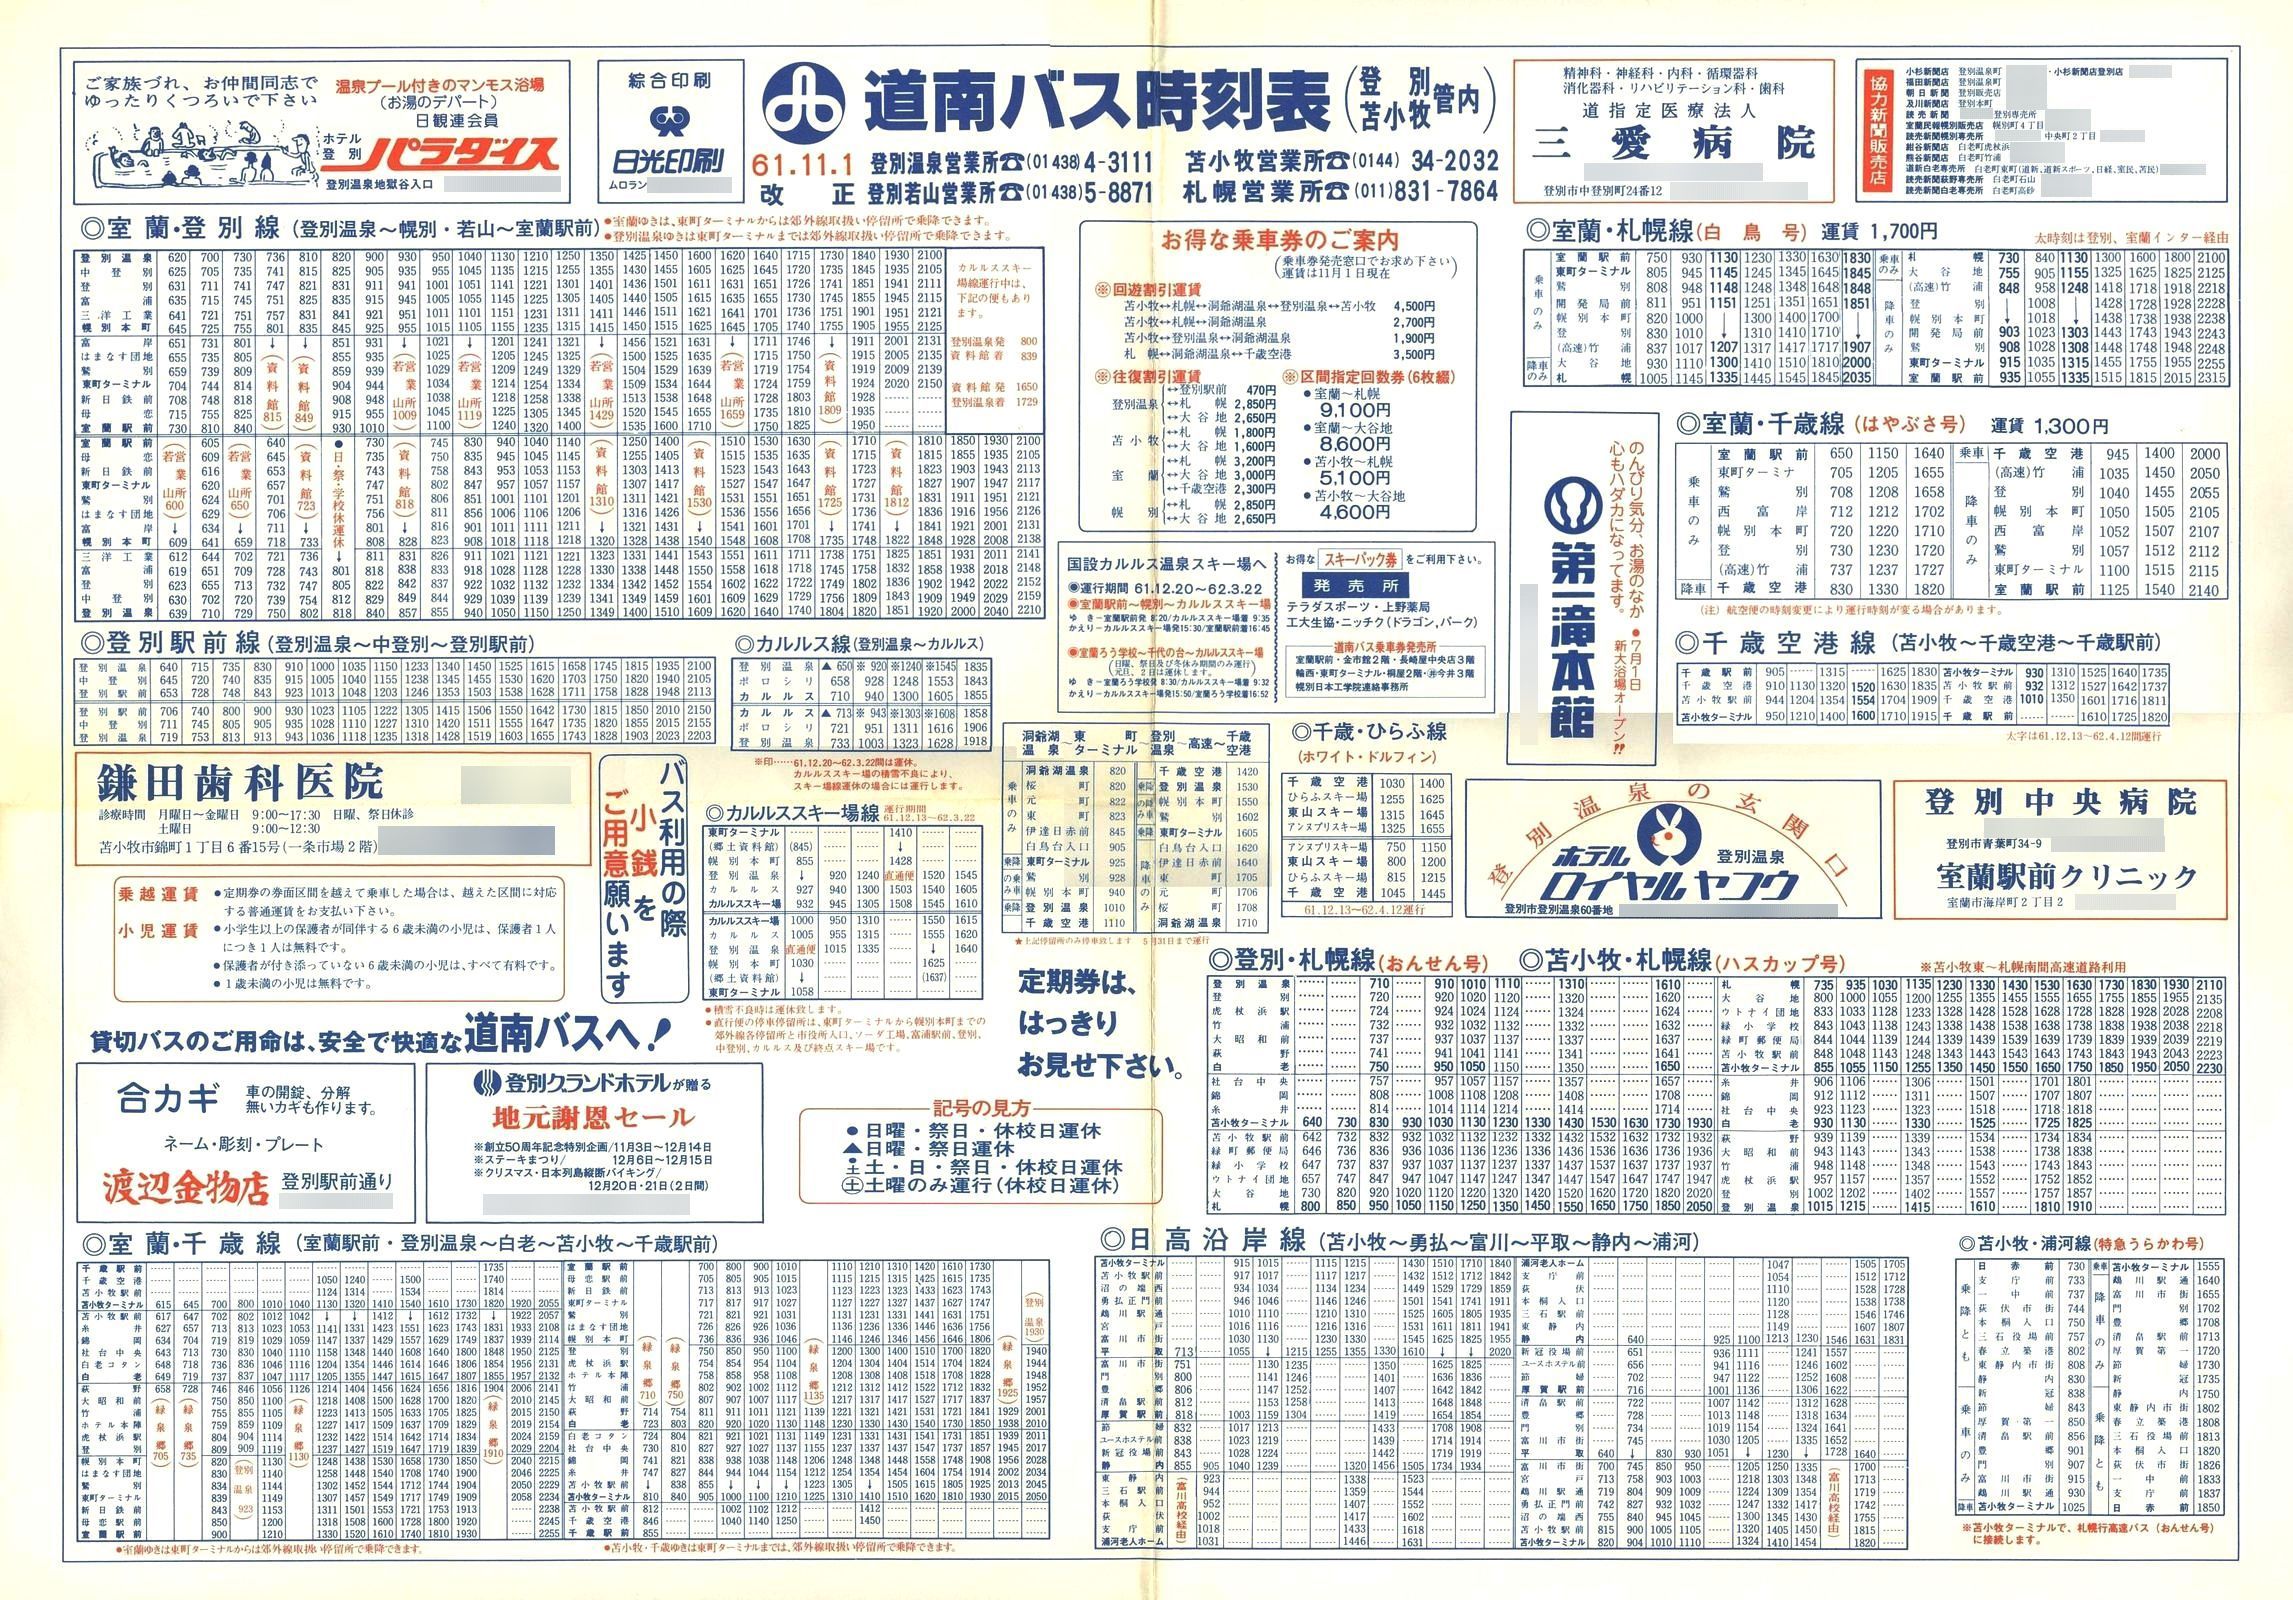 1986-11-01改正_道南バス_登別・苫小牧管内大判時刻表